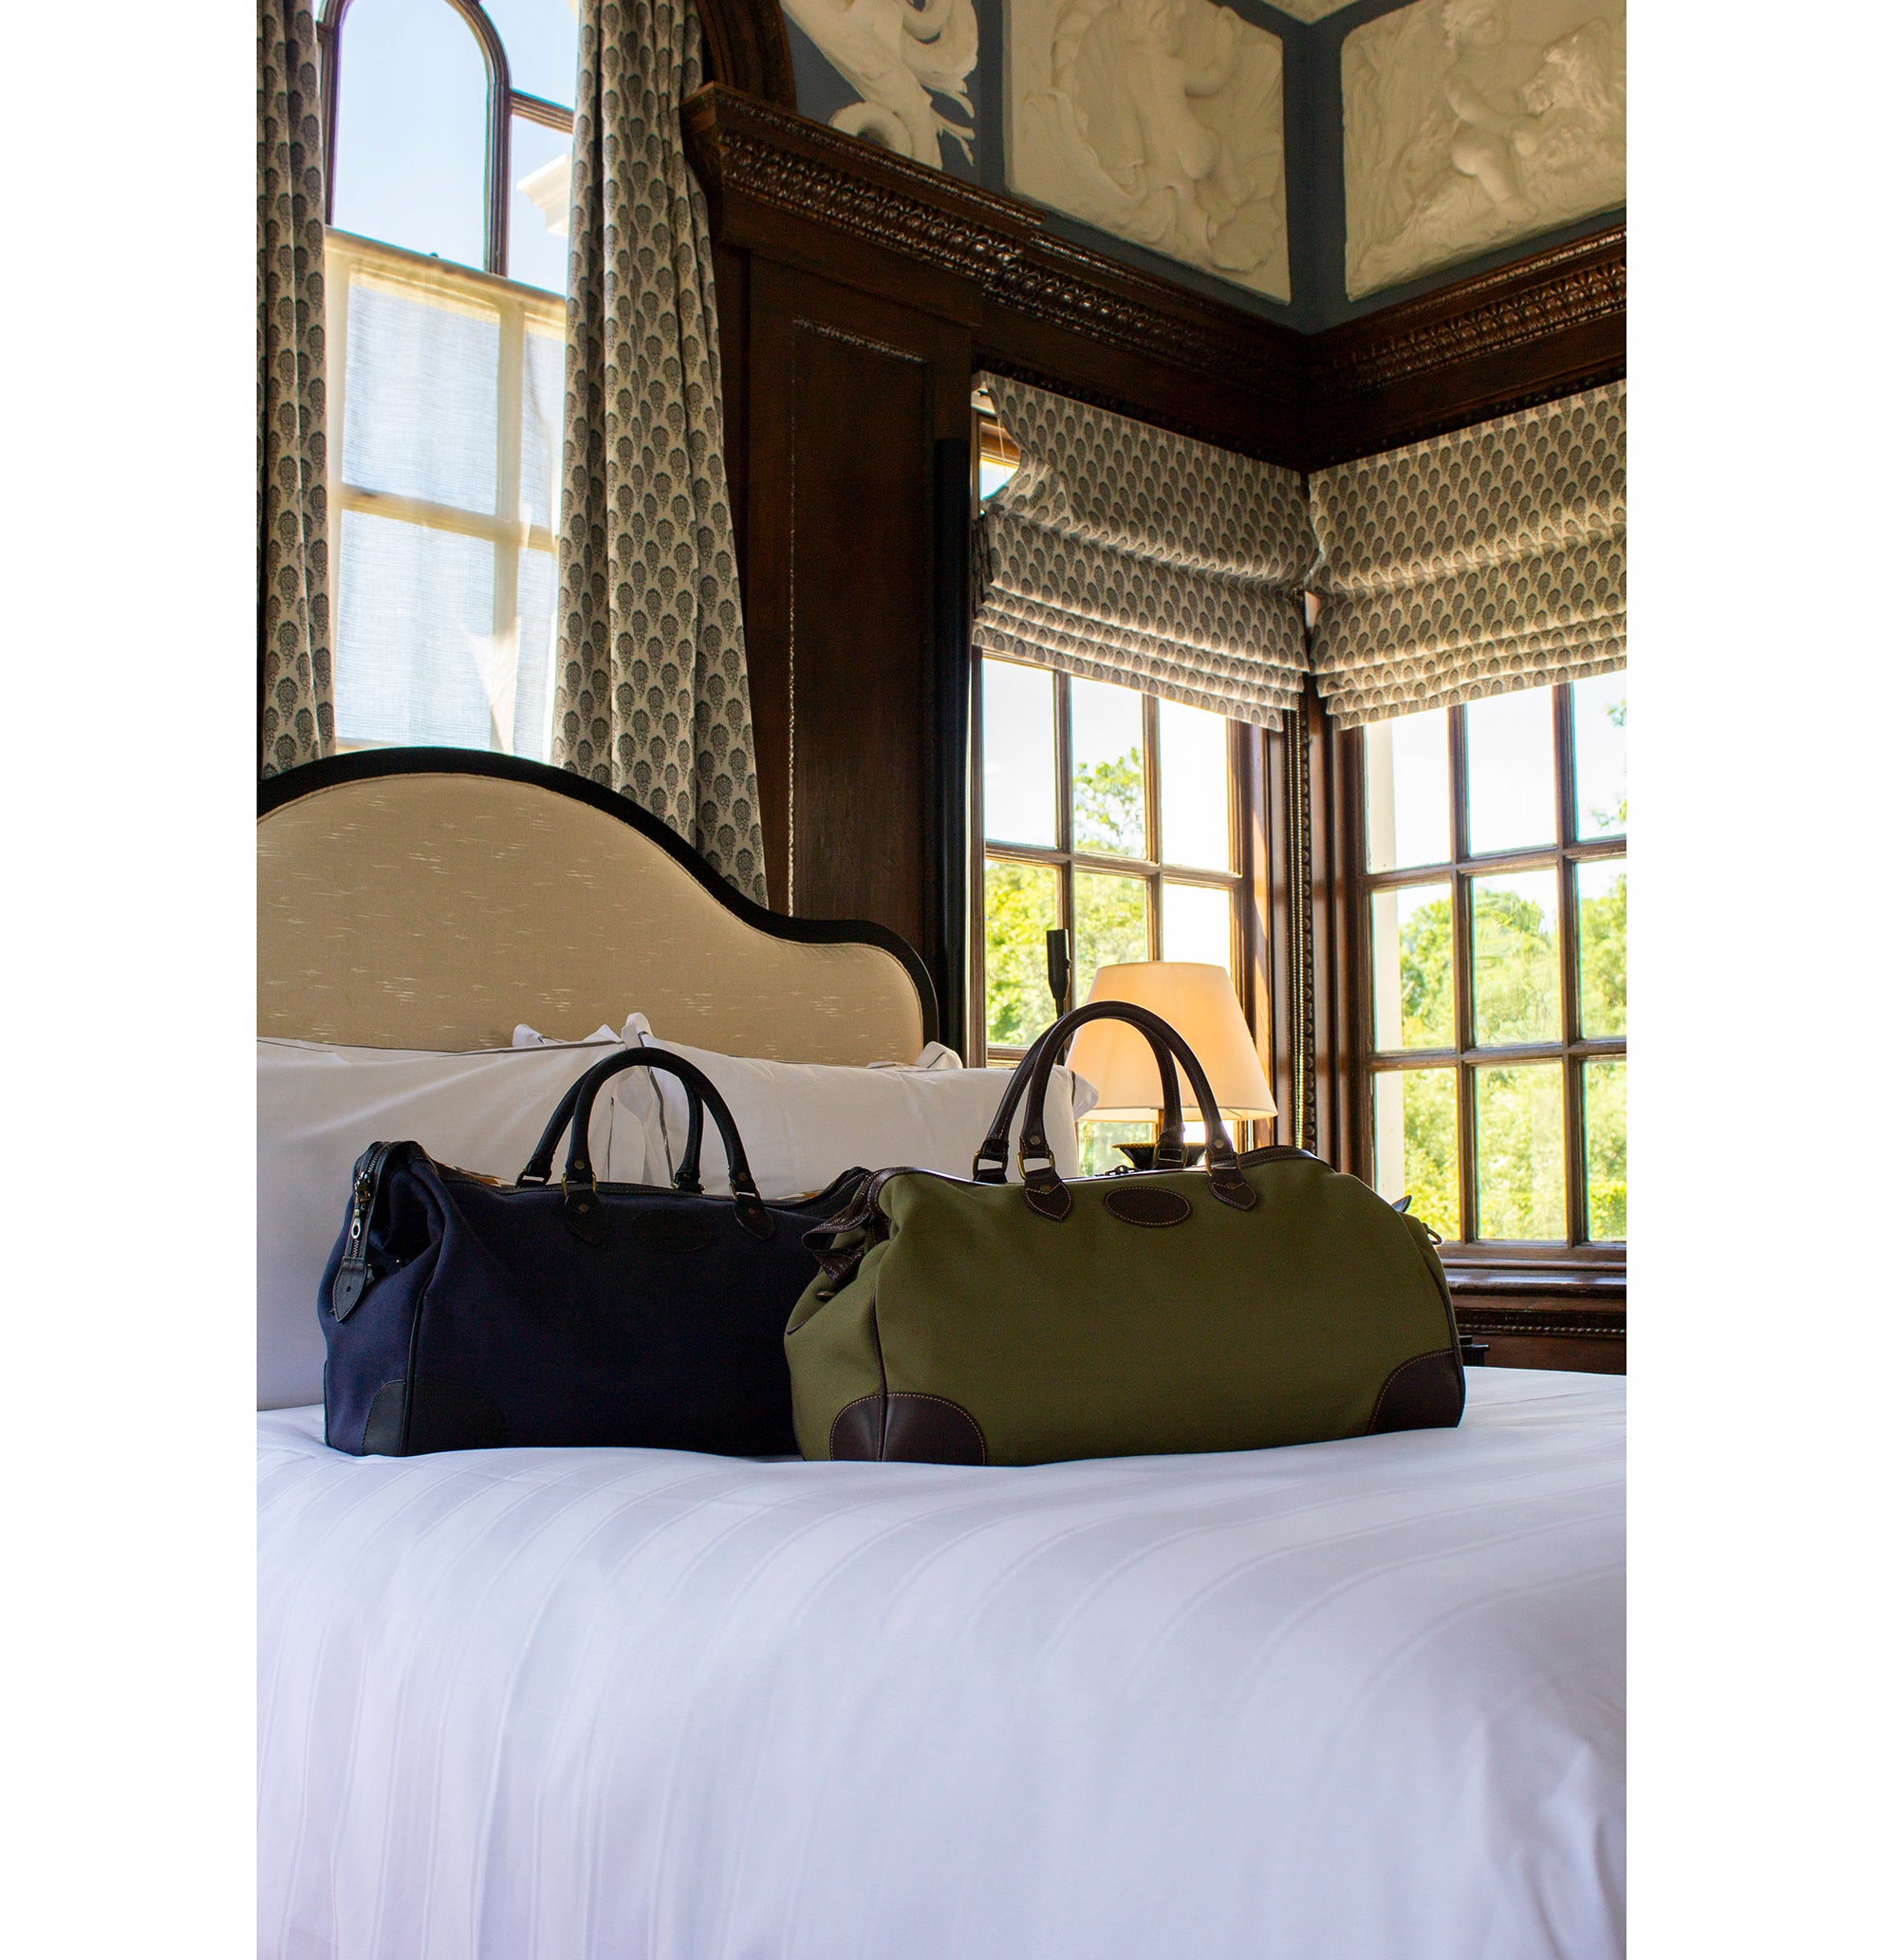 Ettinger Cotswold Weekend Bag in olive, Hurlingham Overnight bag in navy, Monkey Island Estate